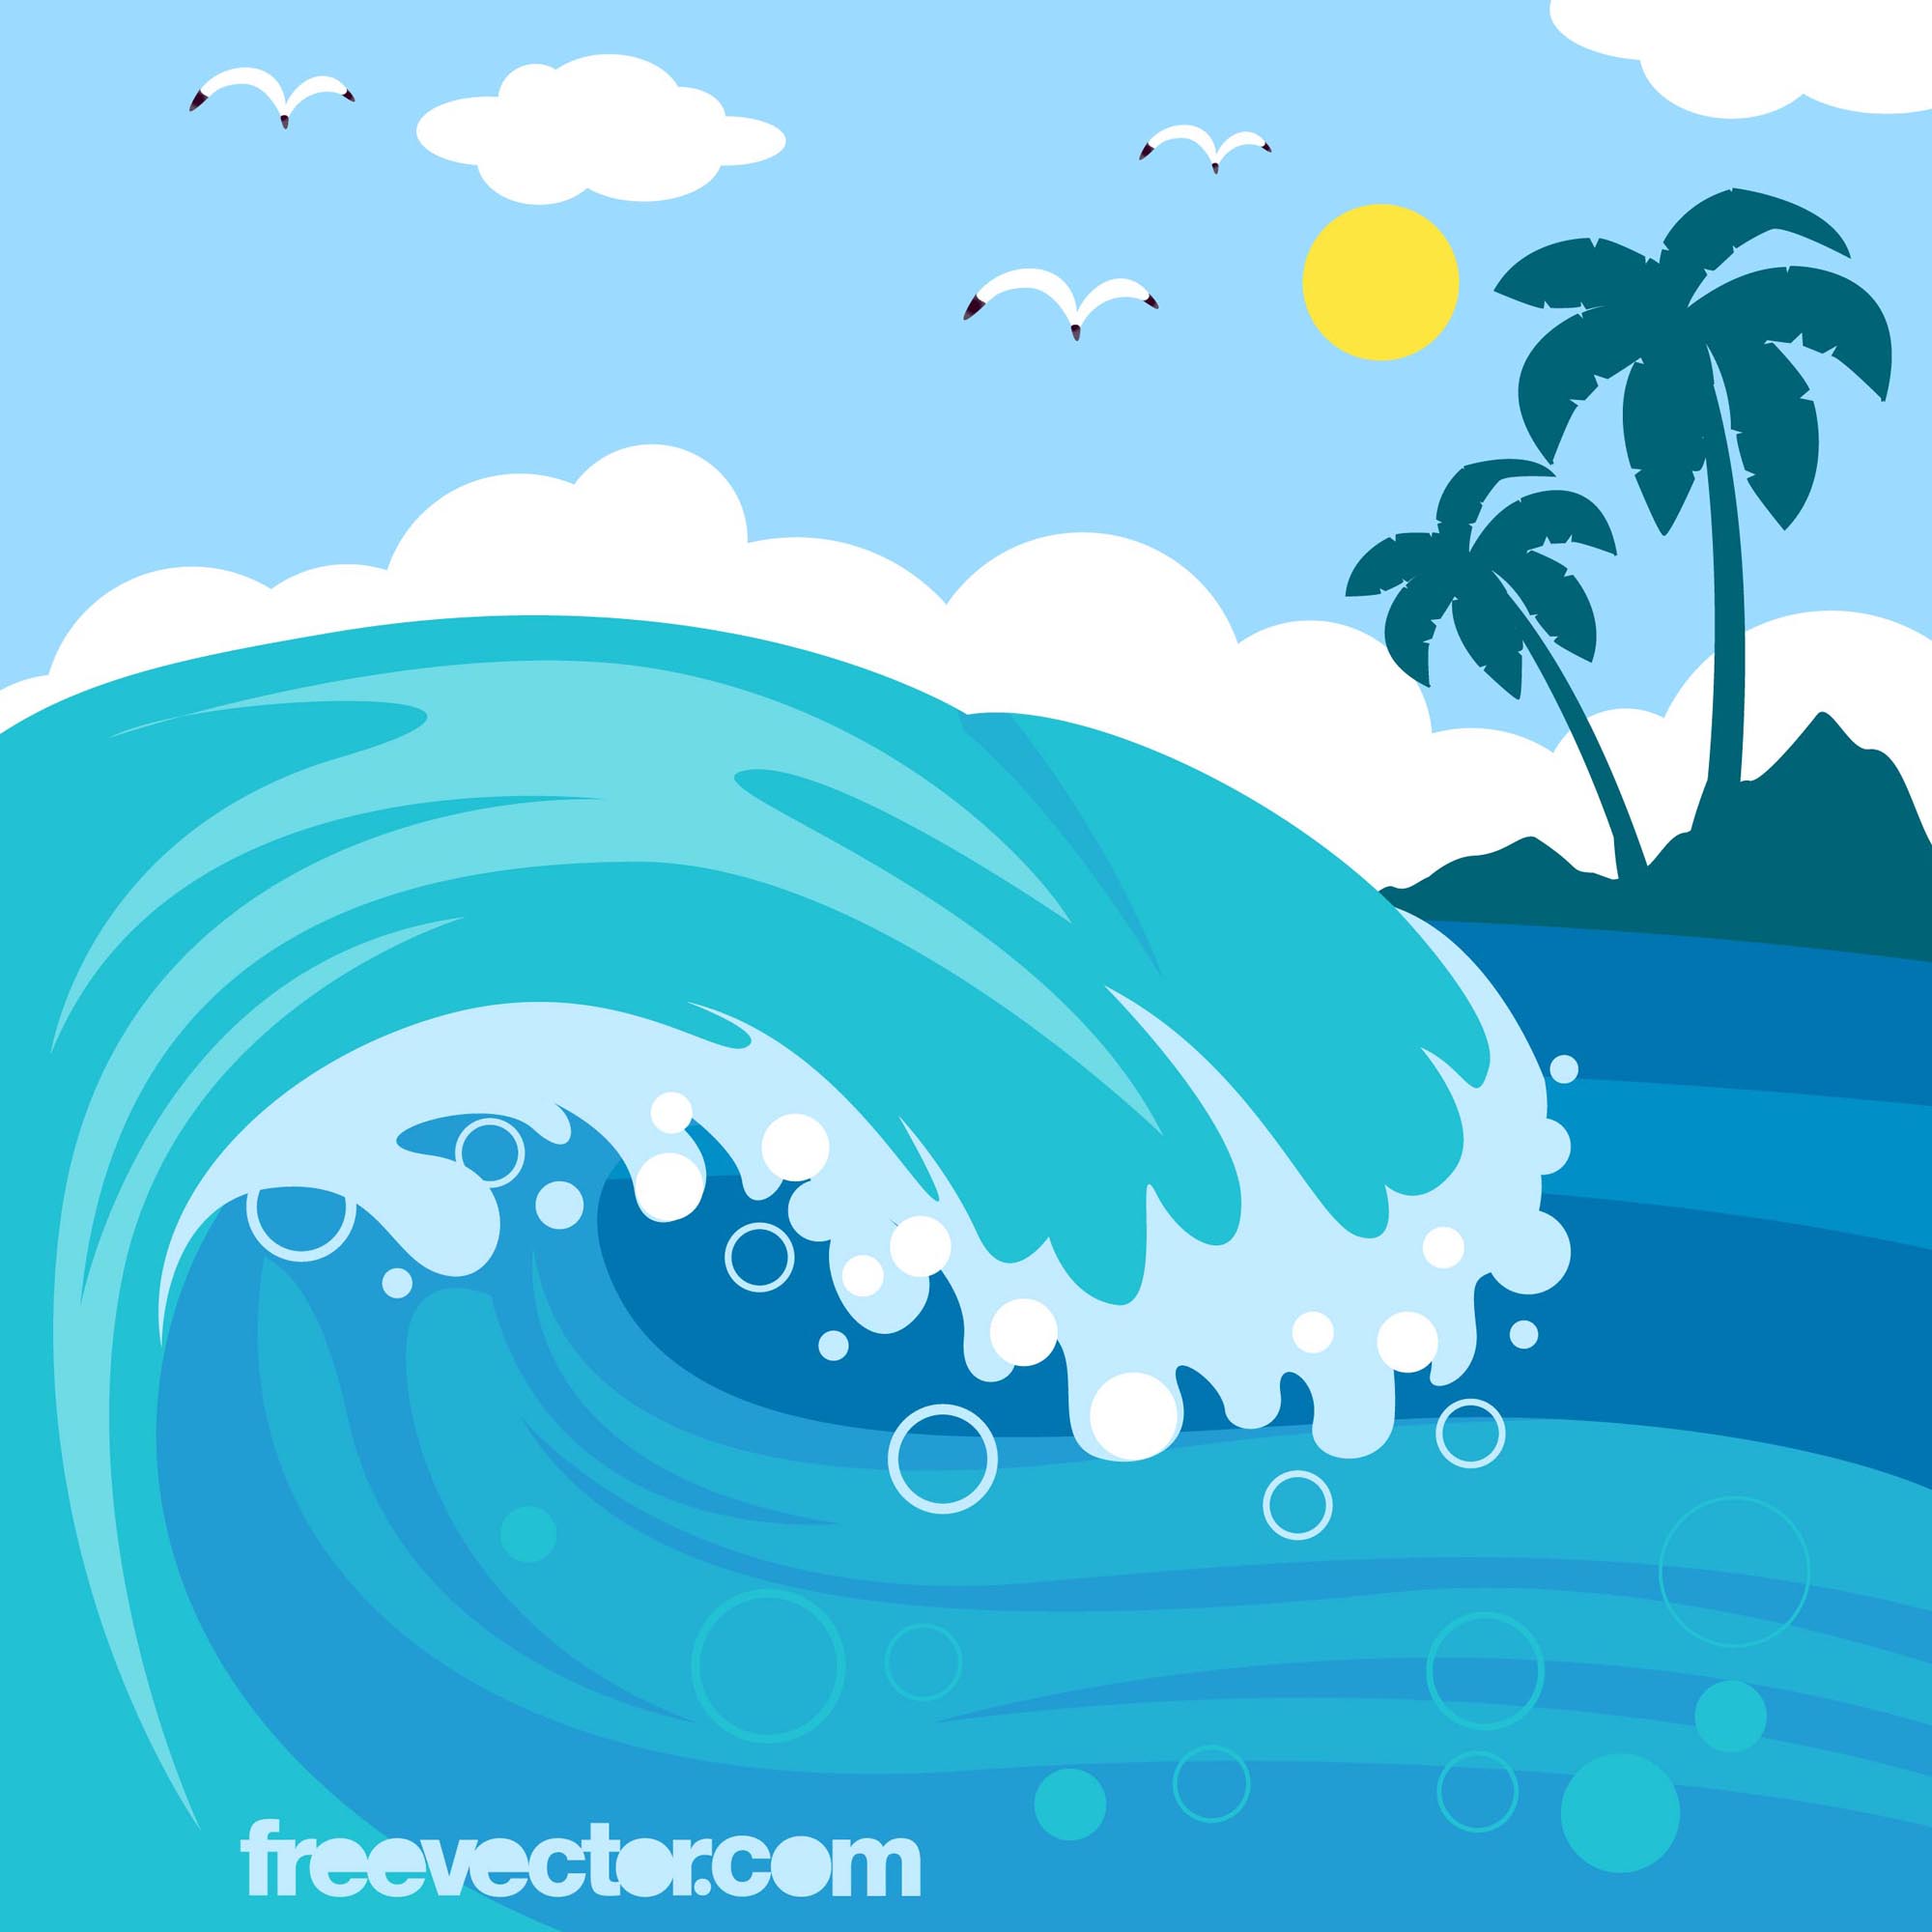 cartoon waves Wave free vectors ui download jpg